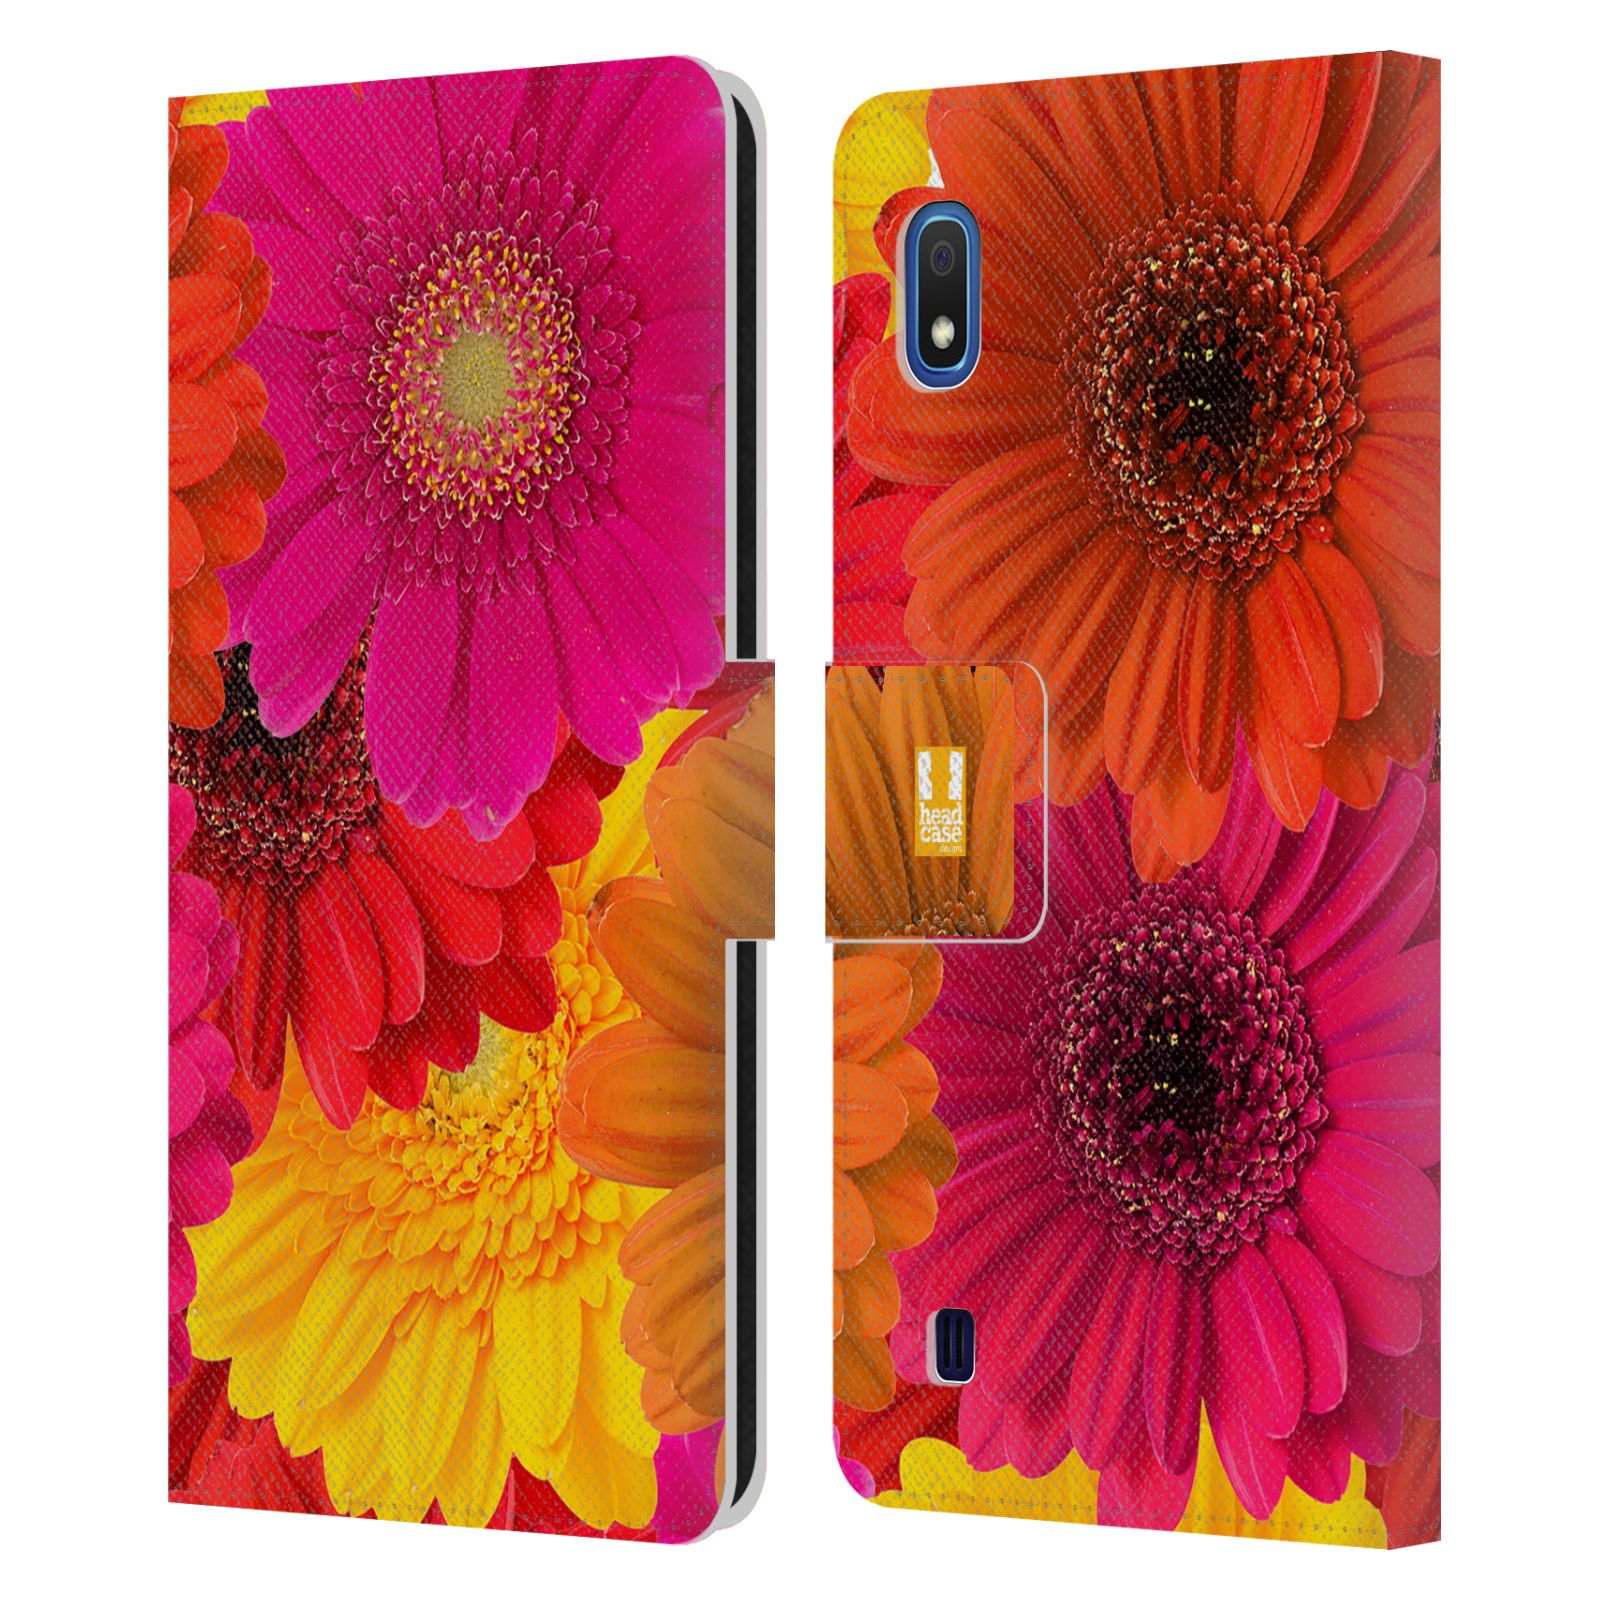 Pouzdro na mobil Samsung Galaxy A10 květy foto fialová, oranžová GERBERA